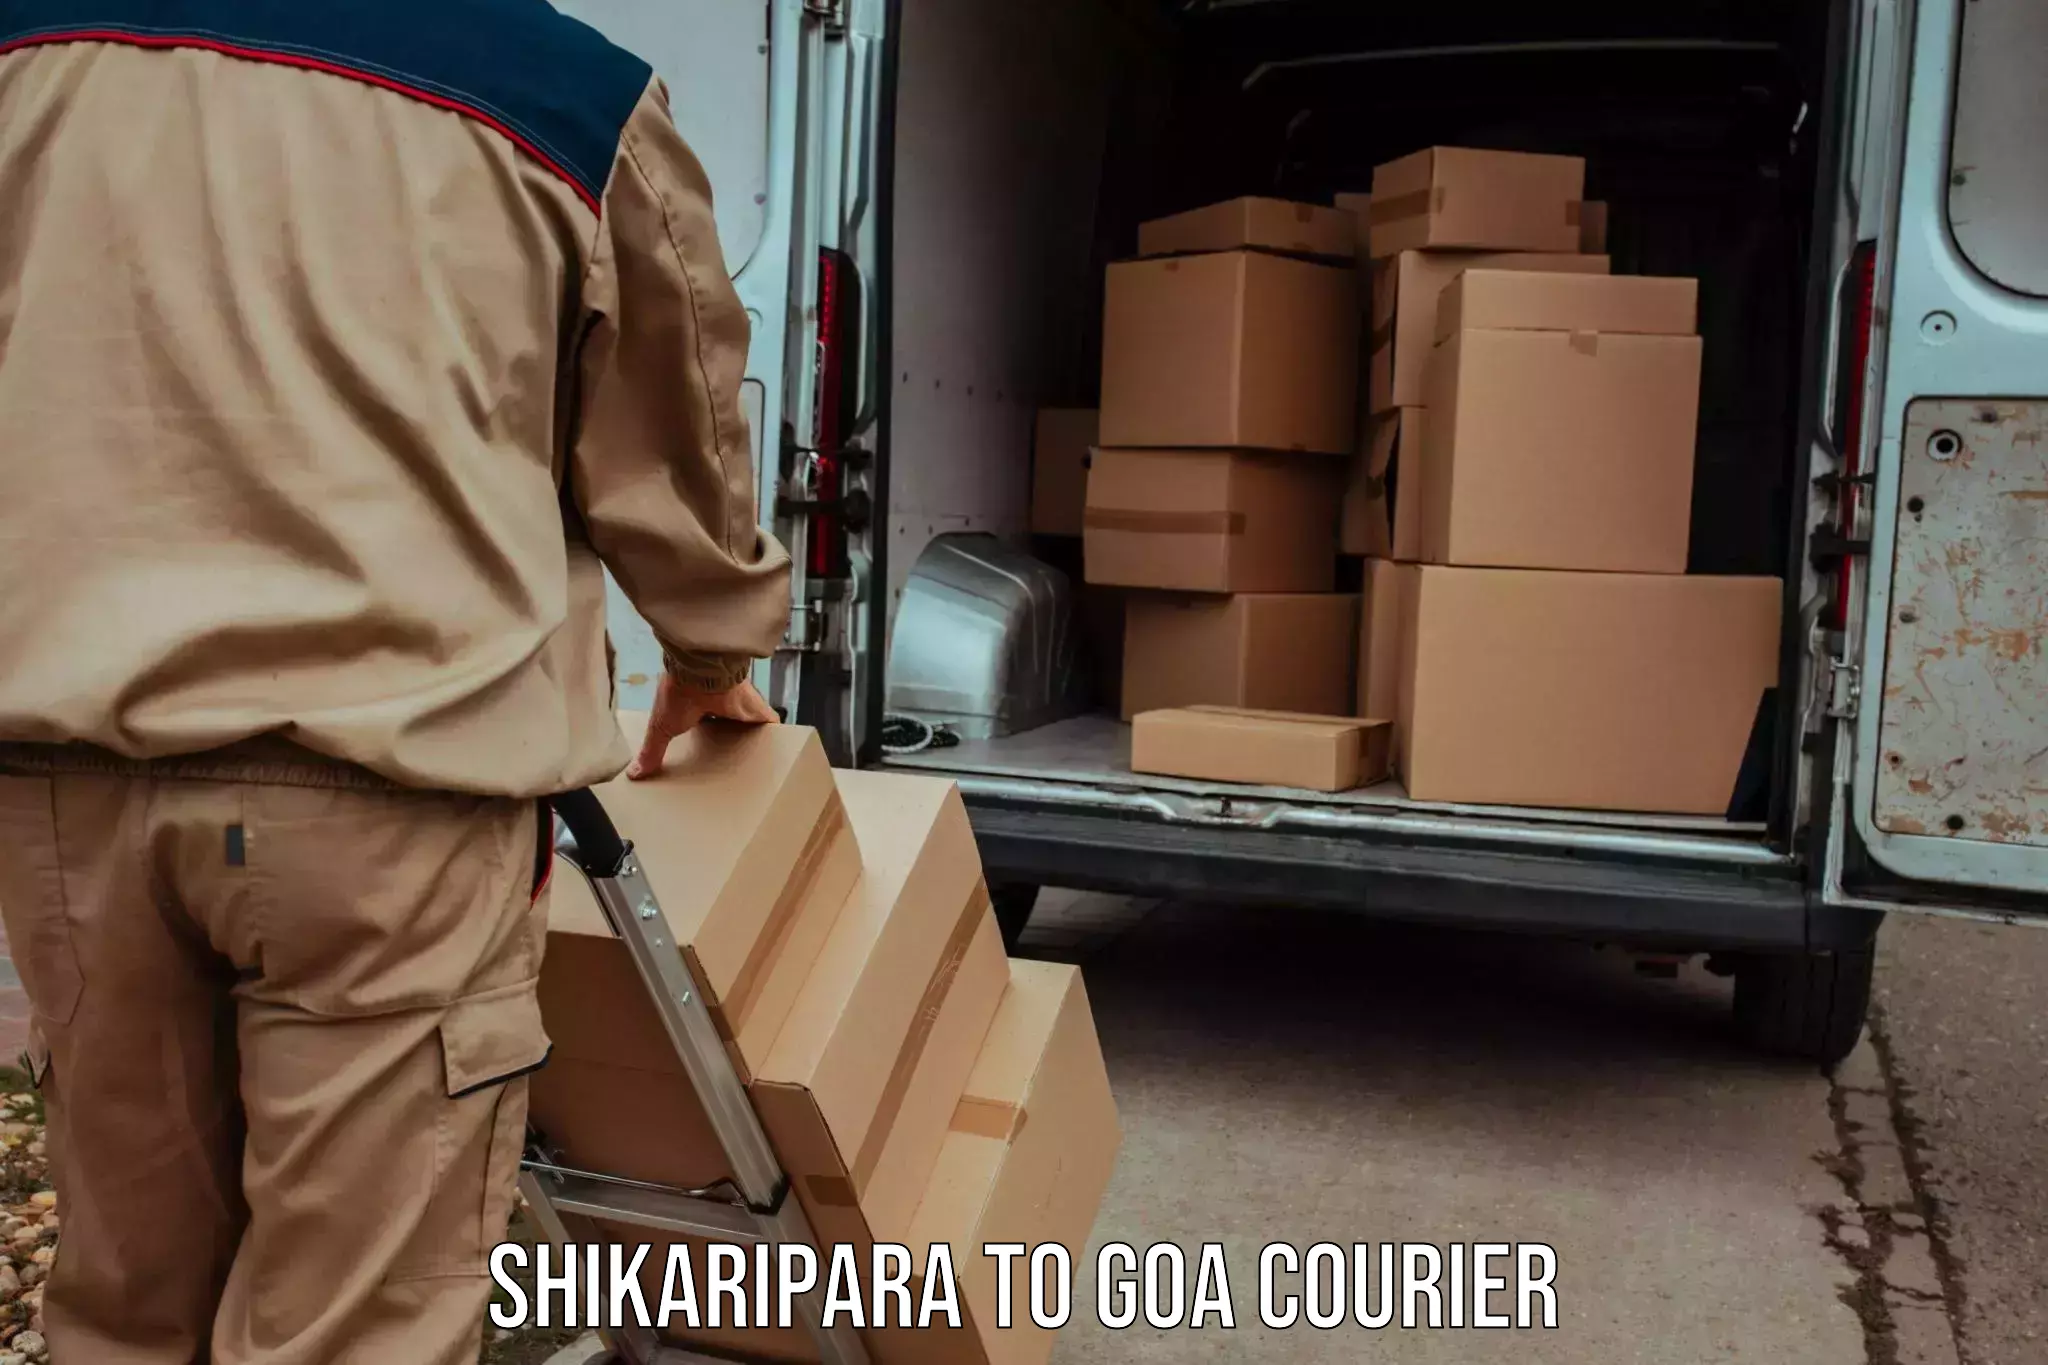 Next-day freight services Shikaripara to South Goa